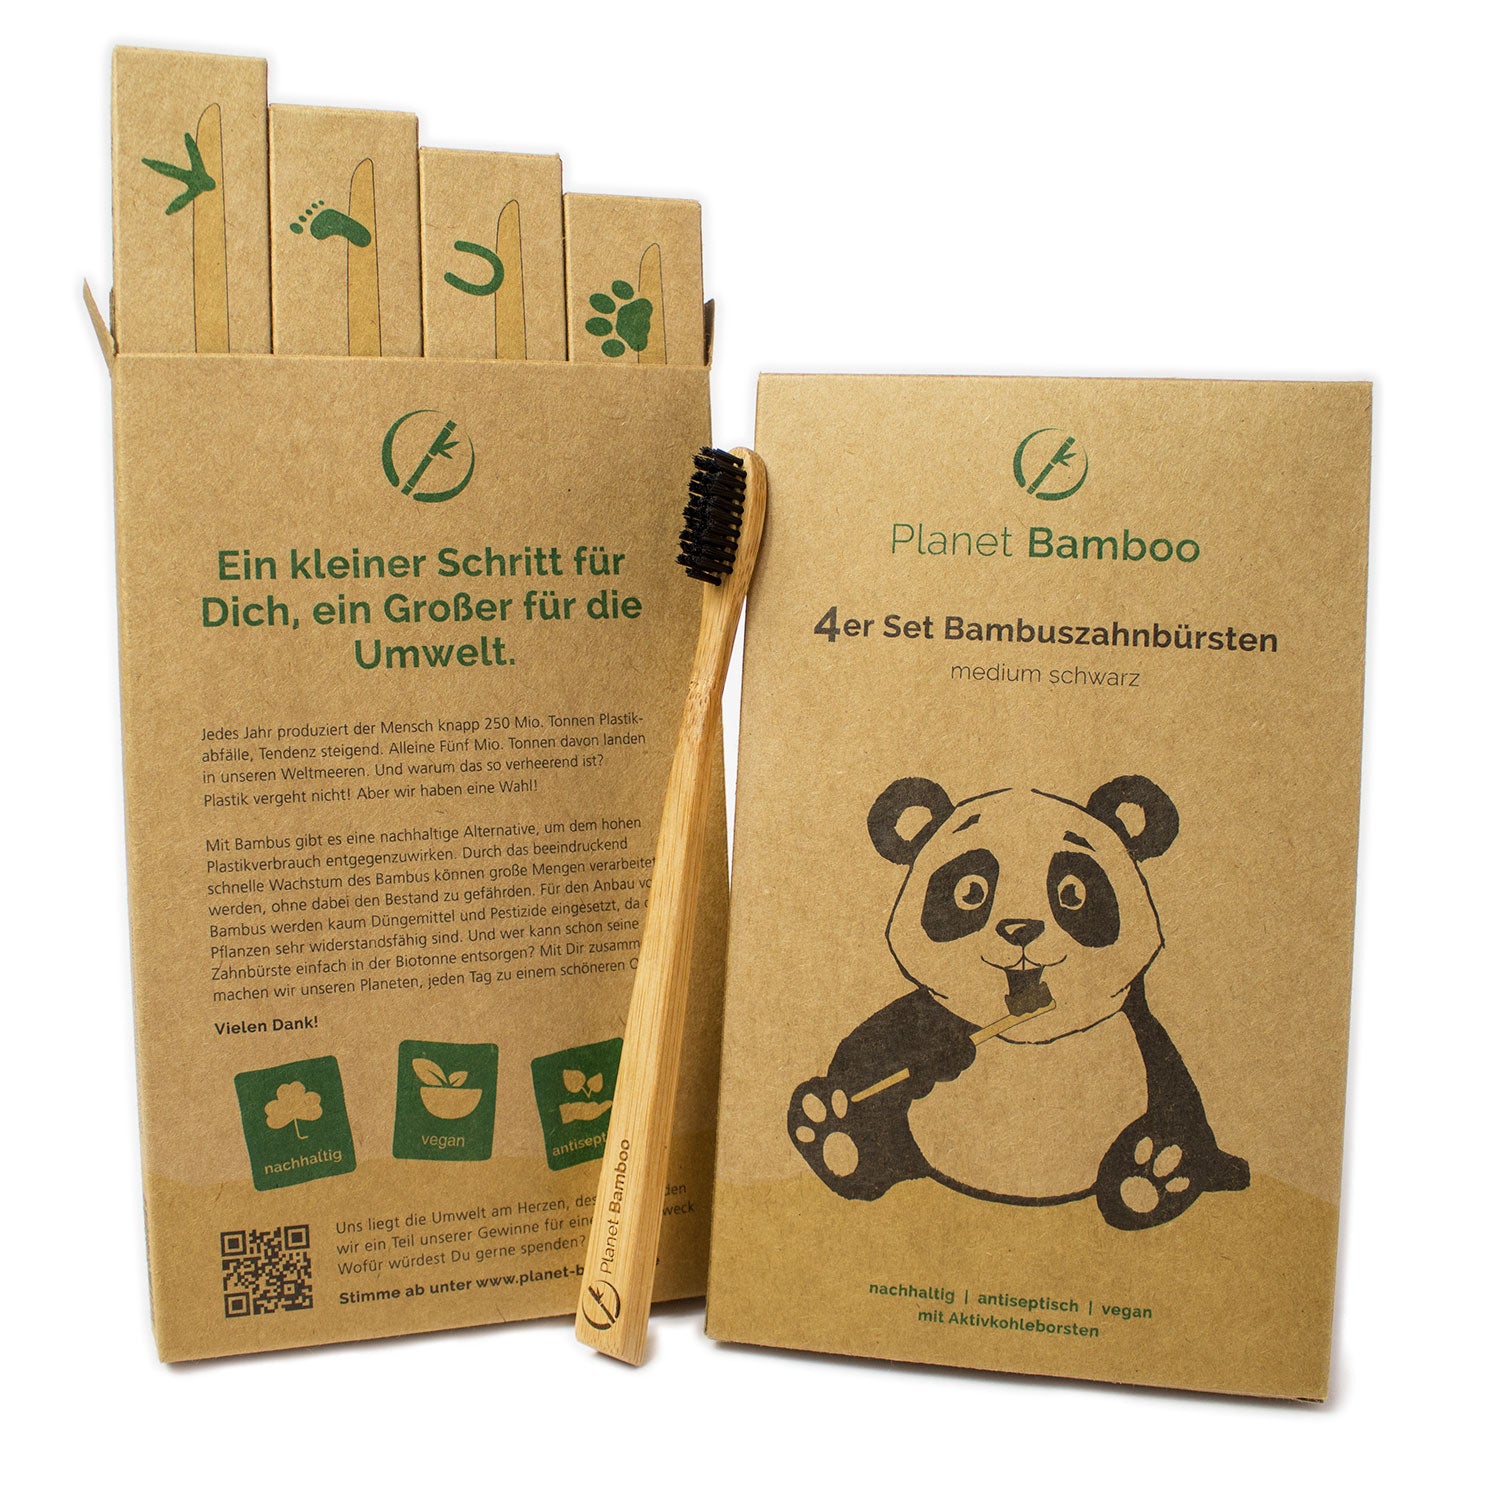 Planet Bamboo 4er-Set Kinder-Bambuszahnbürsten Medium